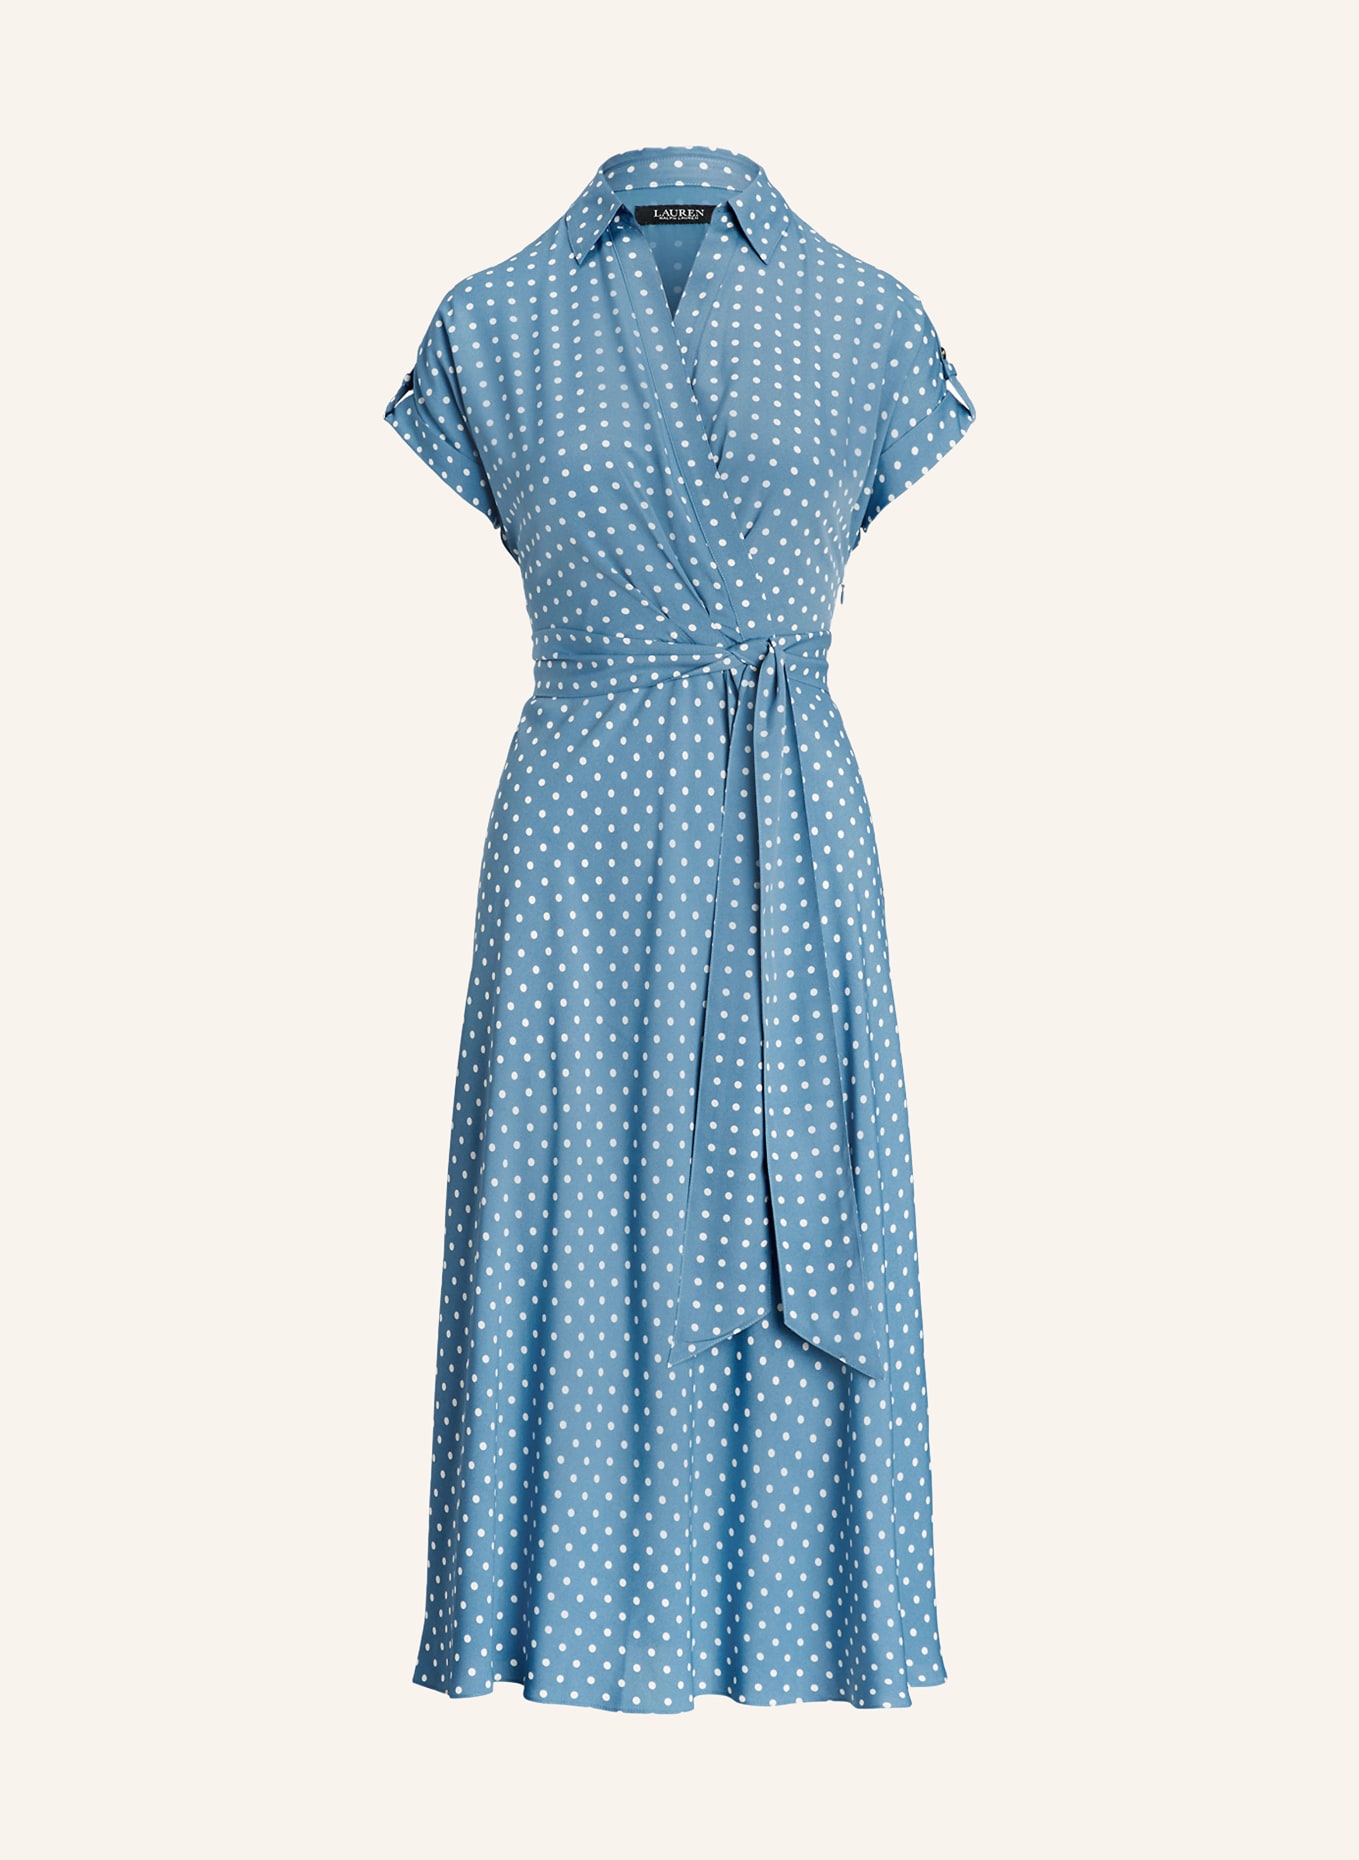 LAUREN RALPH LAUREN Wrap dress, Color: BLUE GRAY/ WHITE (Image 1)